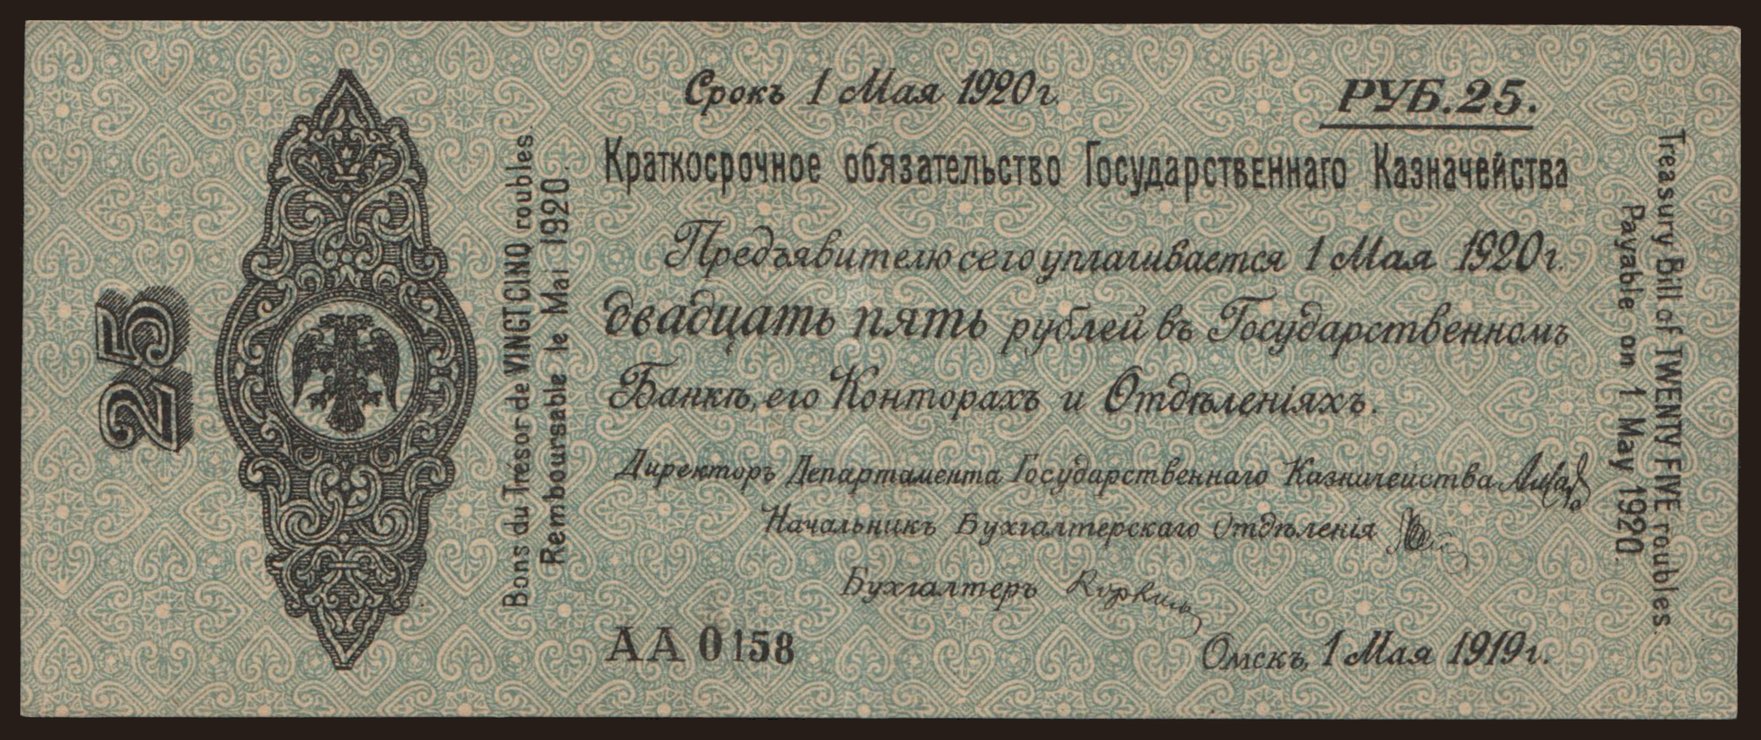 Siberia, 25 rubel, 1919